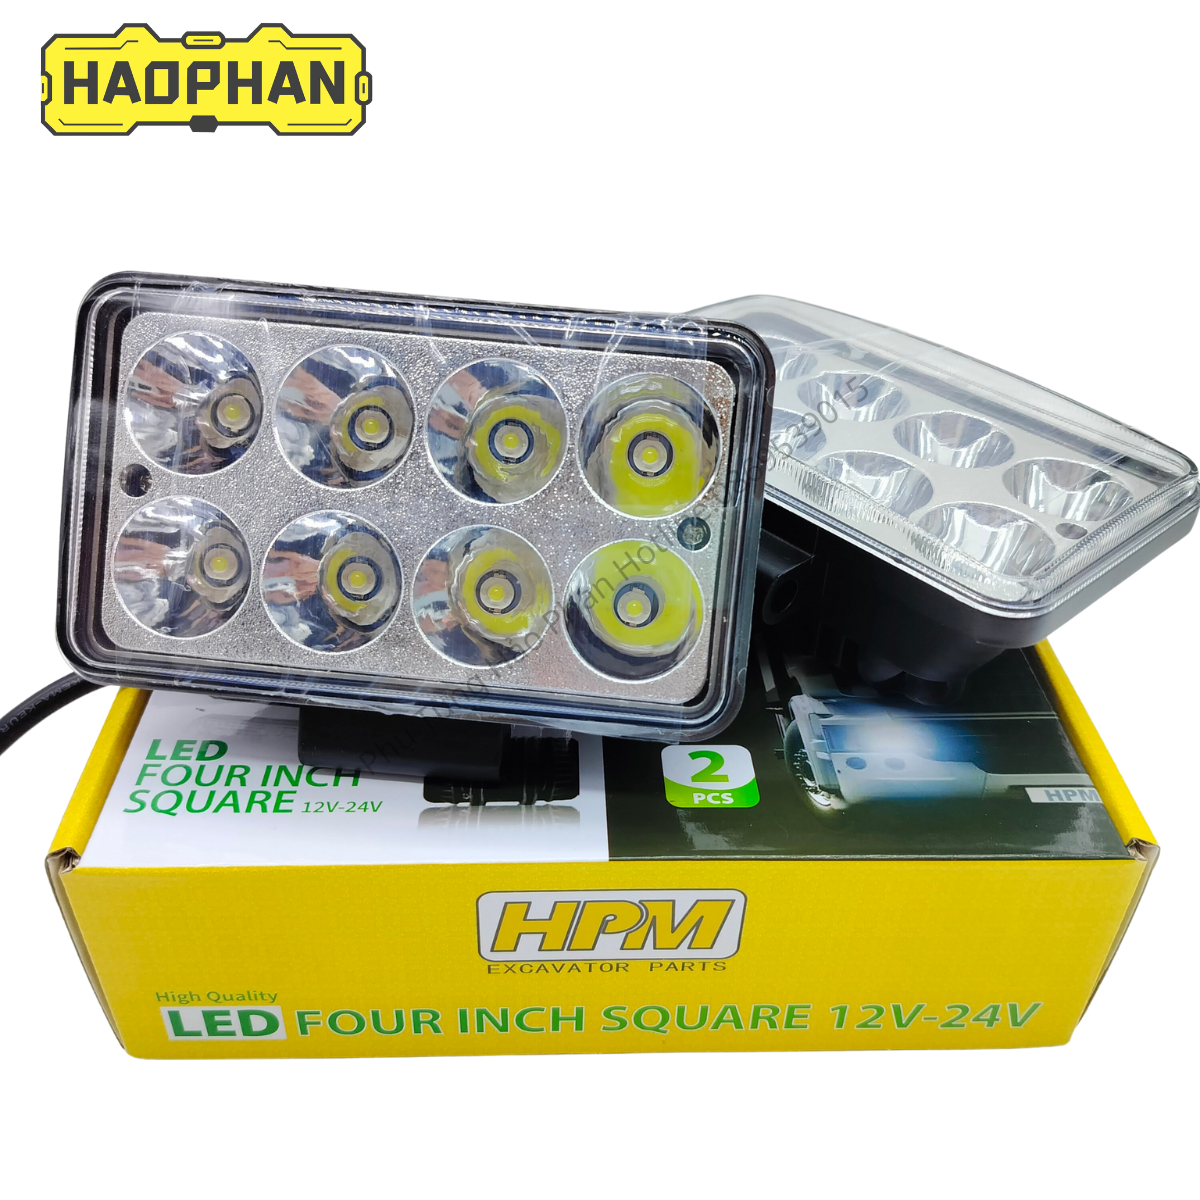 Đèn pha LED, đèn trợ sáng 8 bóng siêu sáng hình chữ nhật điện áp 12V/24V dùng cho ô tô, xe máy, xe công trình